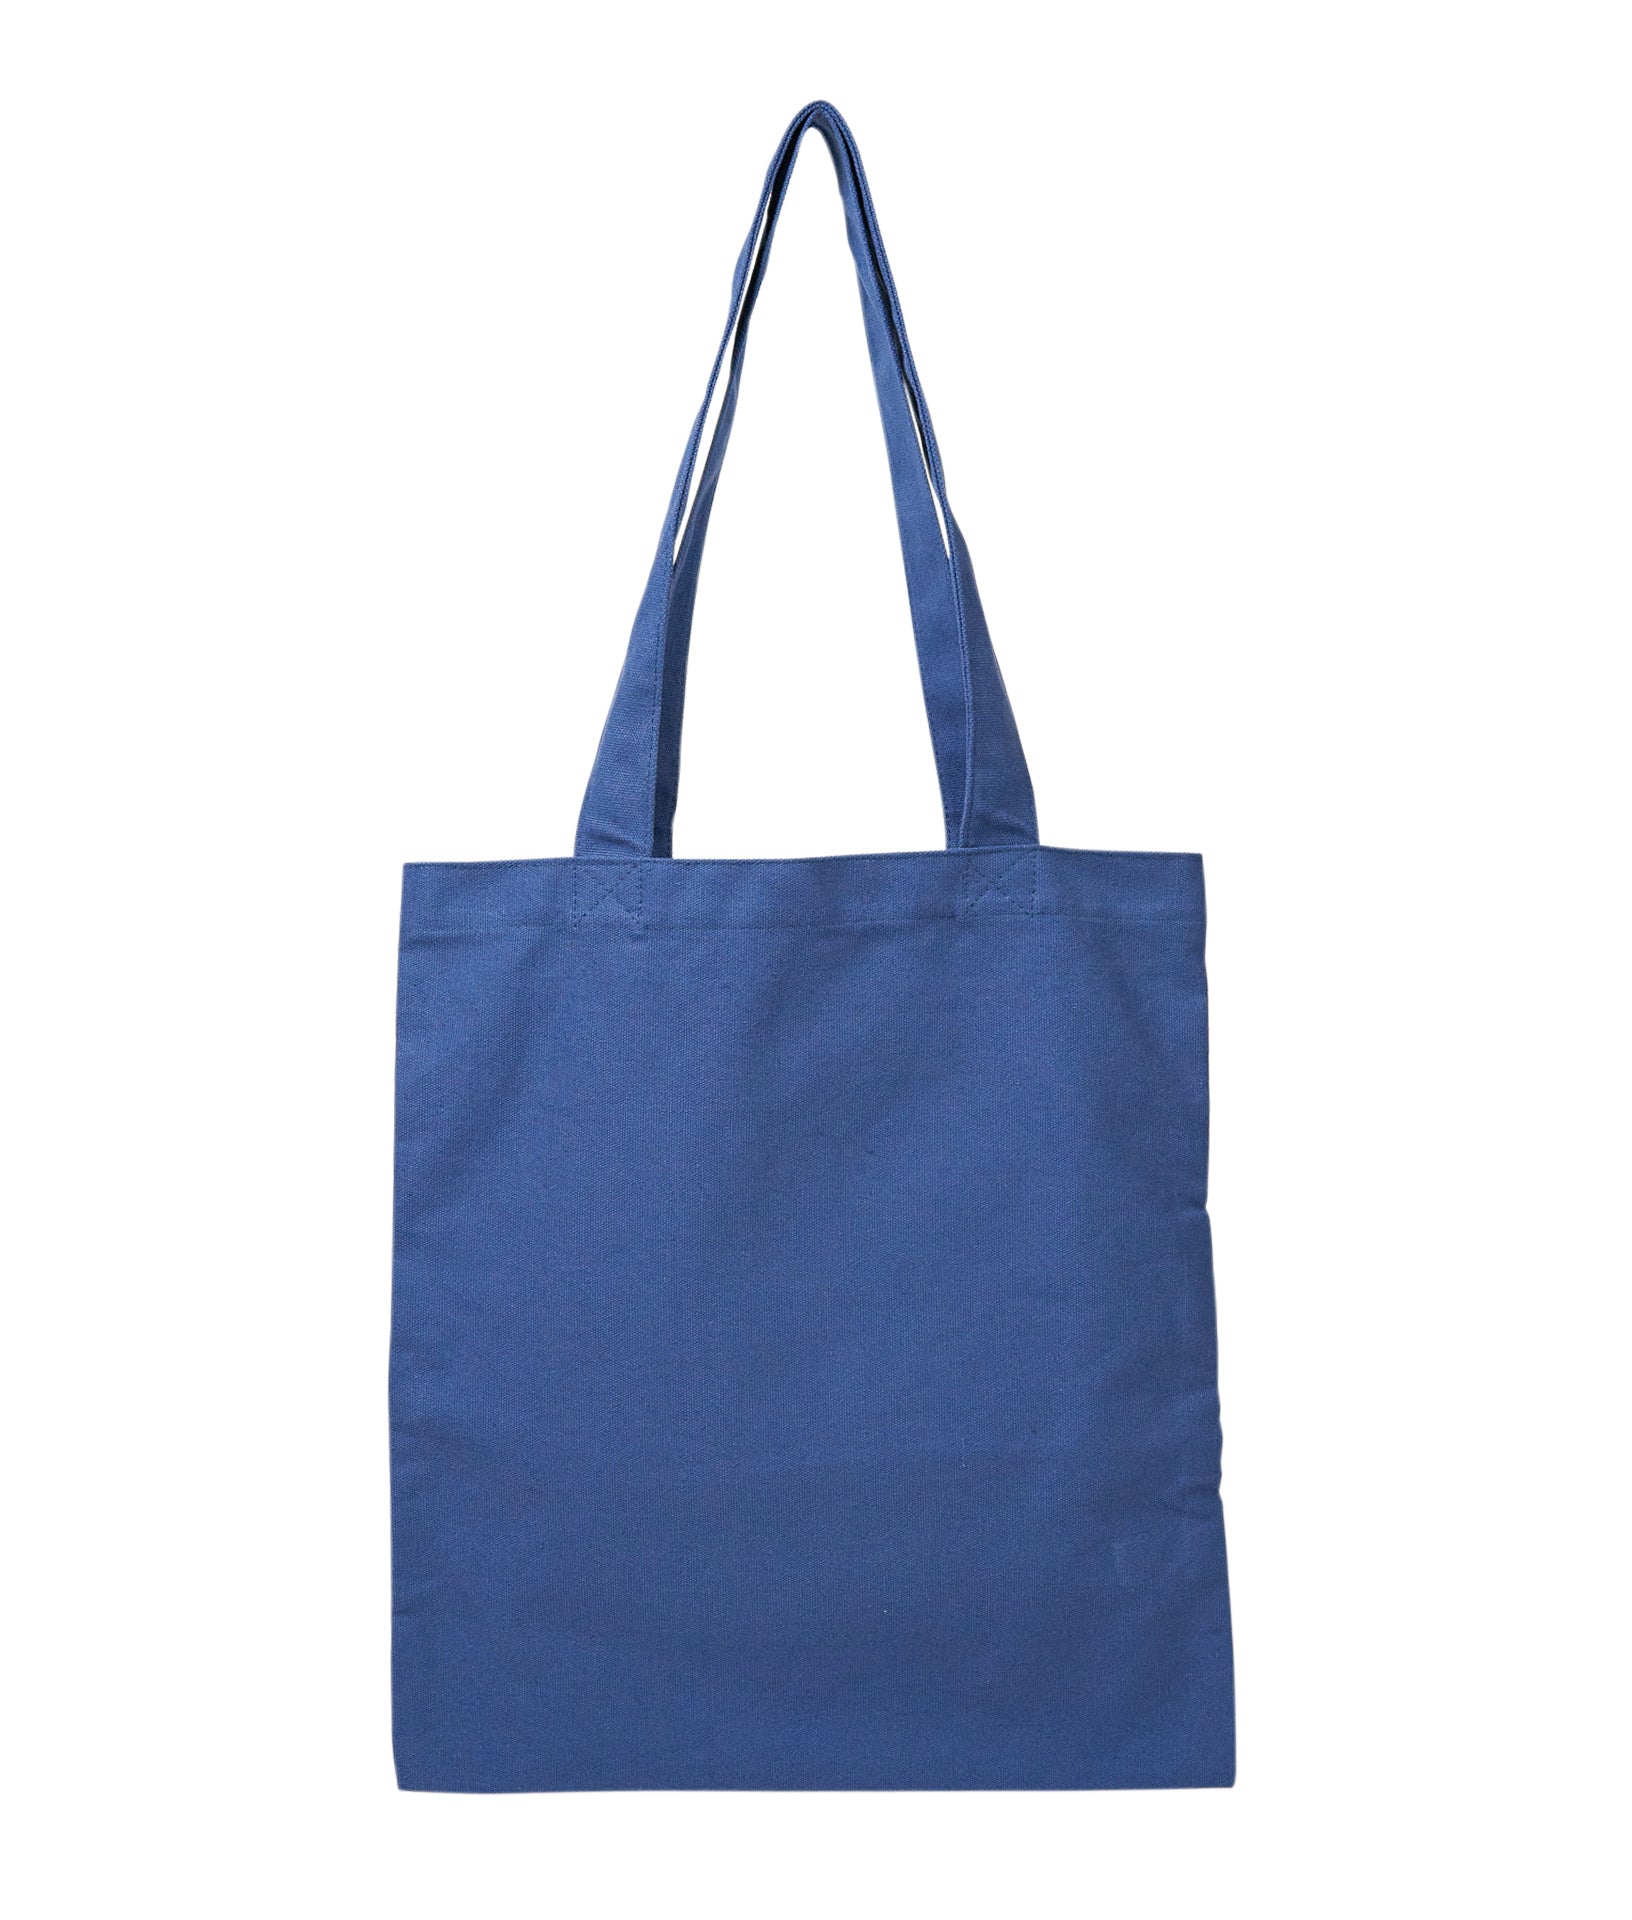 Recycled Material Tote Bag – Bristol Bay Brailer, LLC.